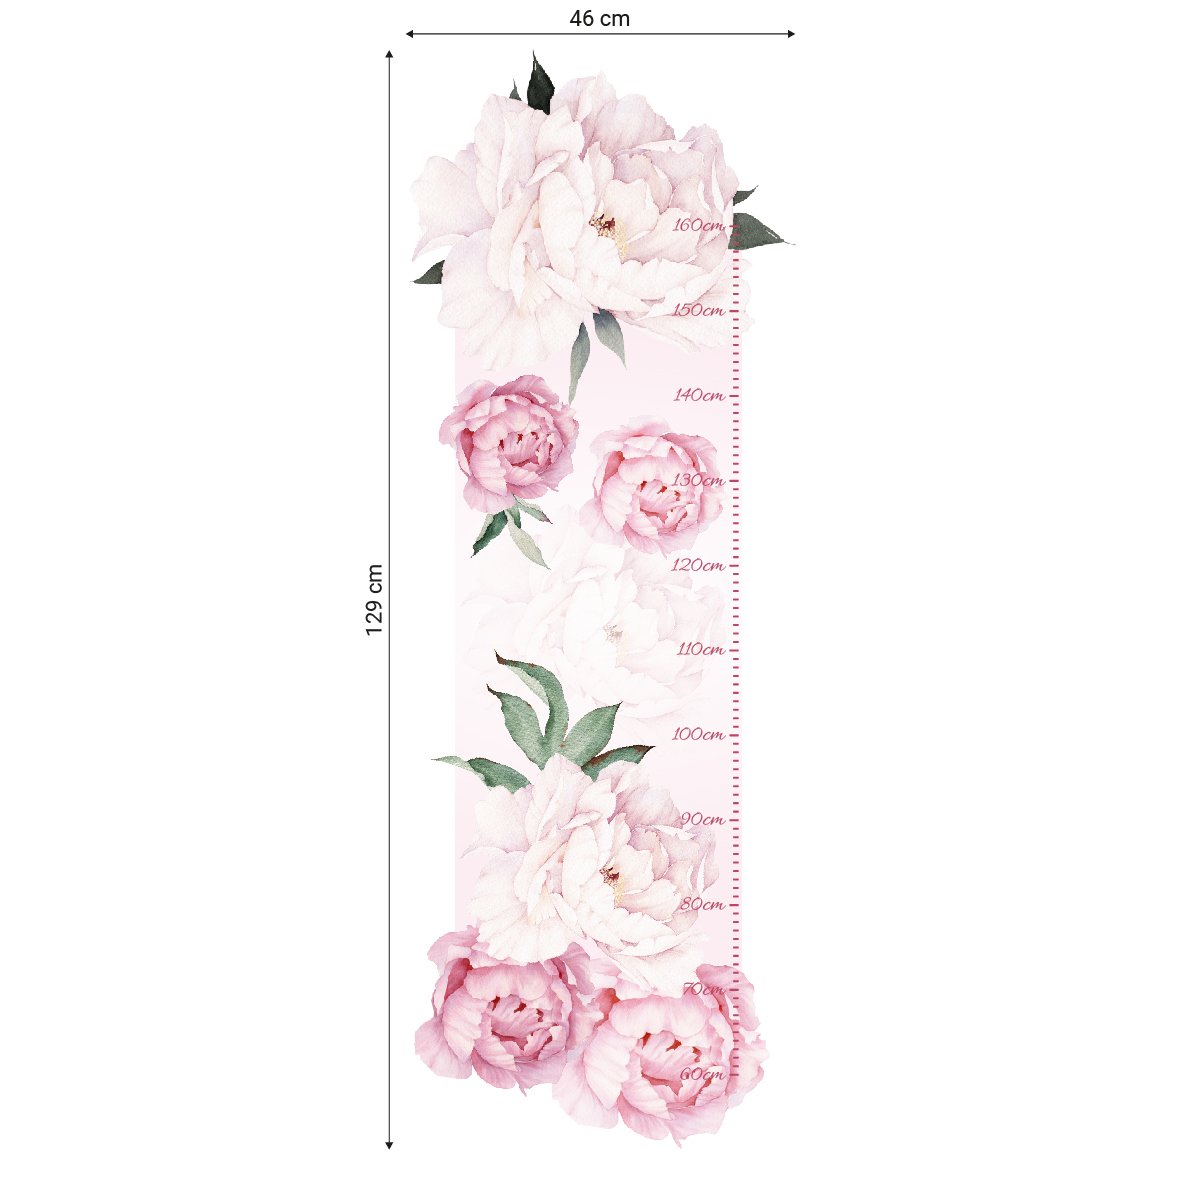 Naklejka na ścianę miarka wzrostu dla dziecka różowe kwiaty#kolor_rozowy-mix